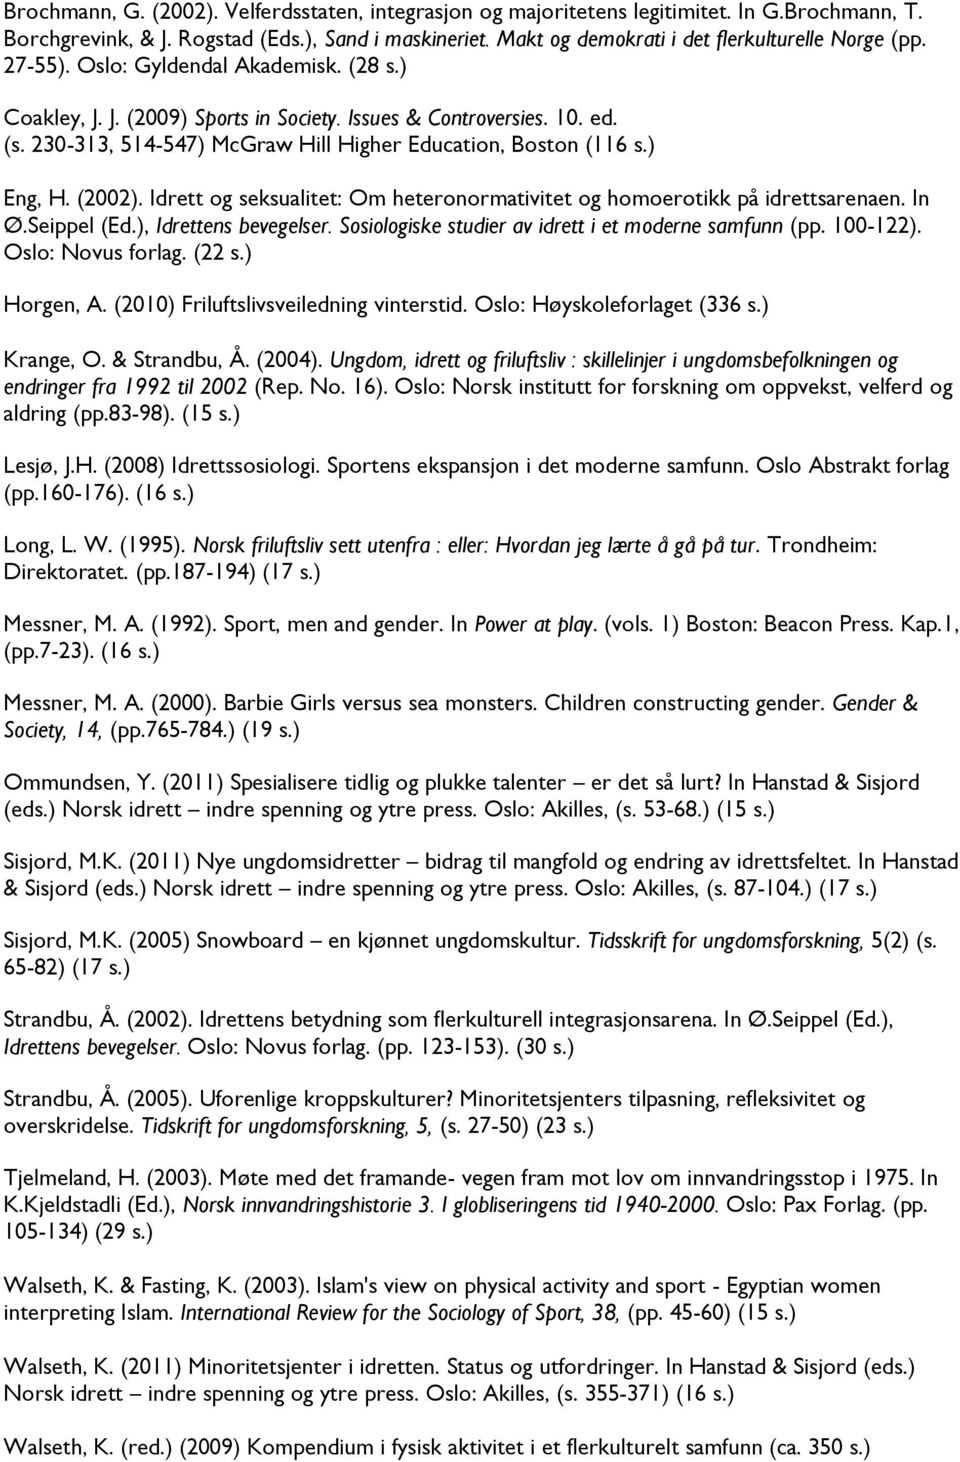 230-313, 514-547) McGraw Hill Higher Education, Boston (116 s.) Eng, H. (2002). Idrett og seksualitet: Om heteronormativitet og homoerotikk på idrettsarenaen. In Ø.Seippel (Ed.), Idrettens bevegelser.